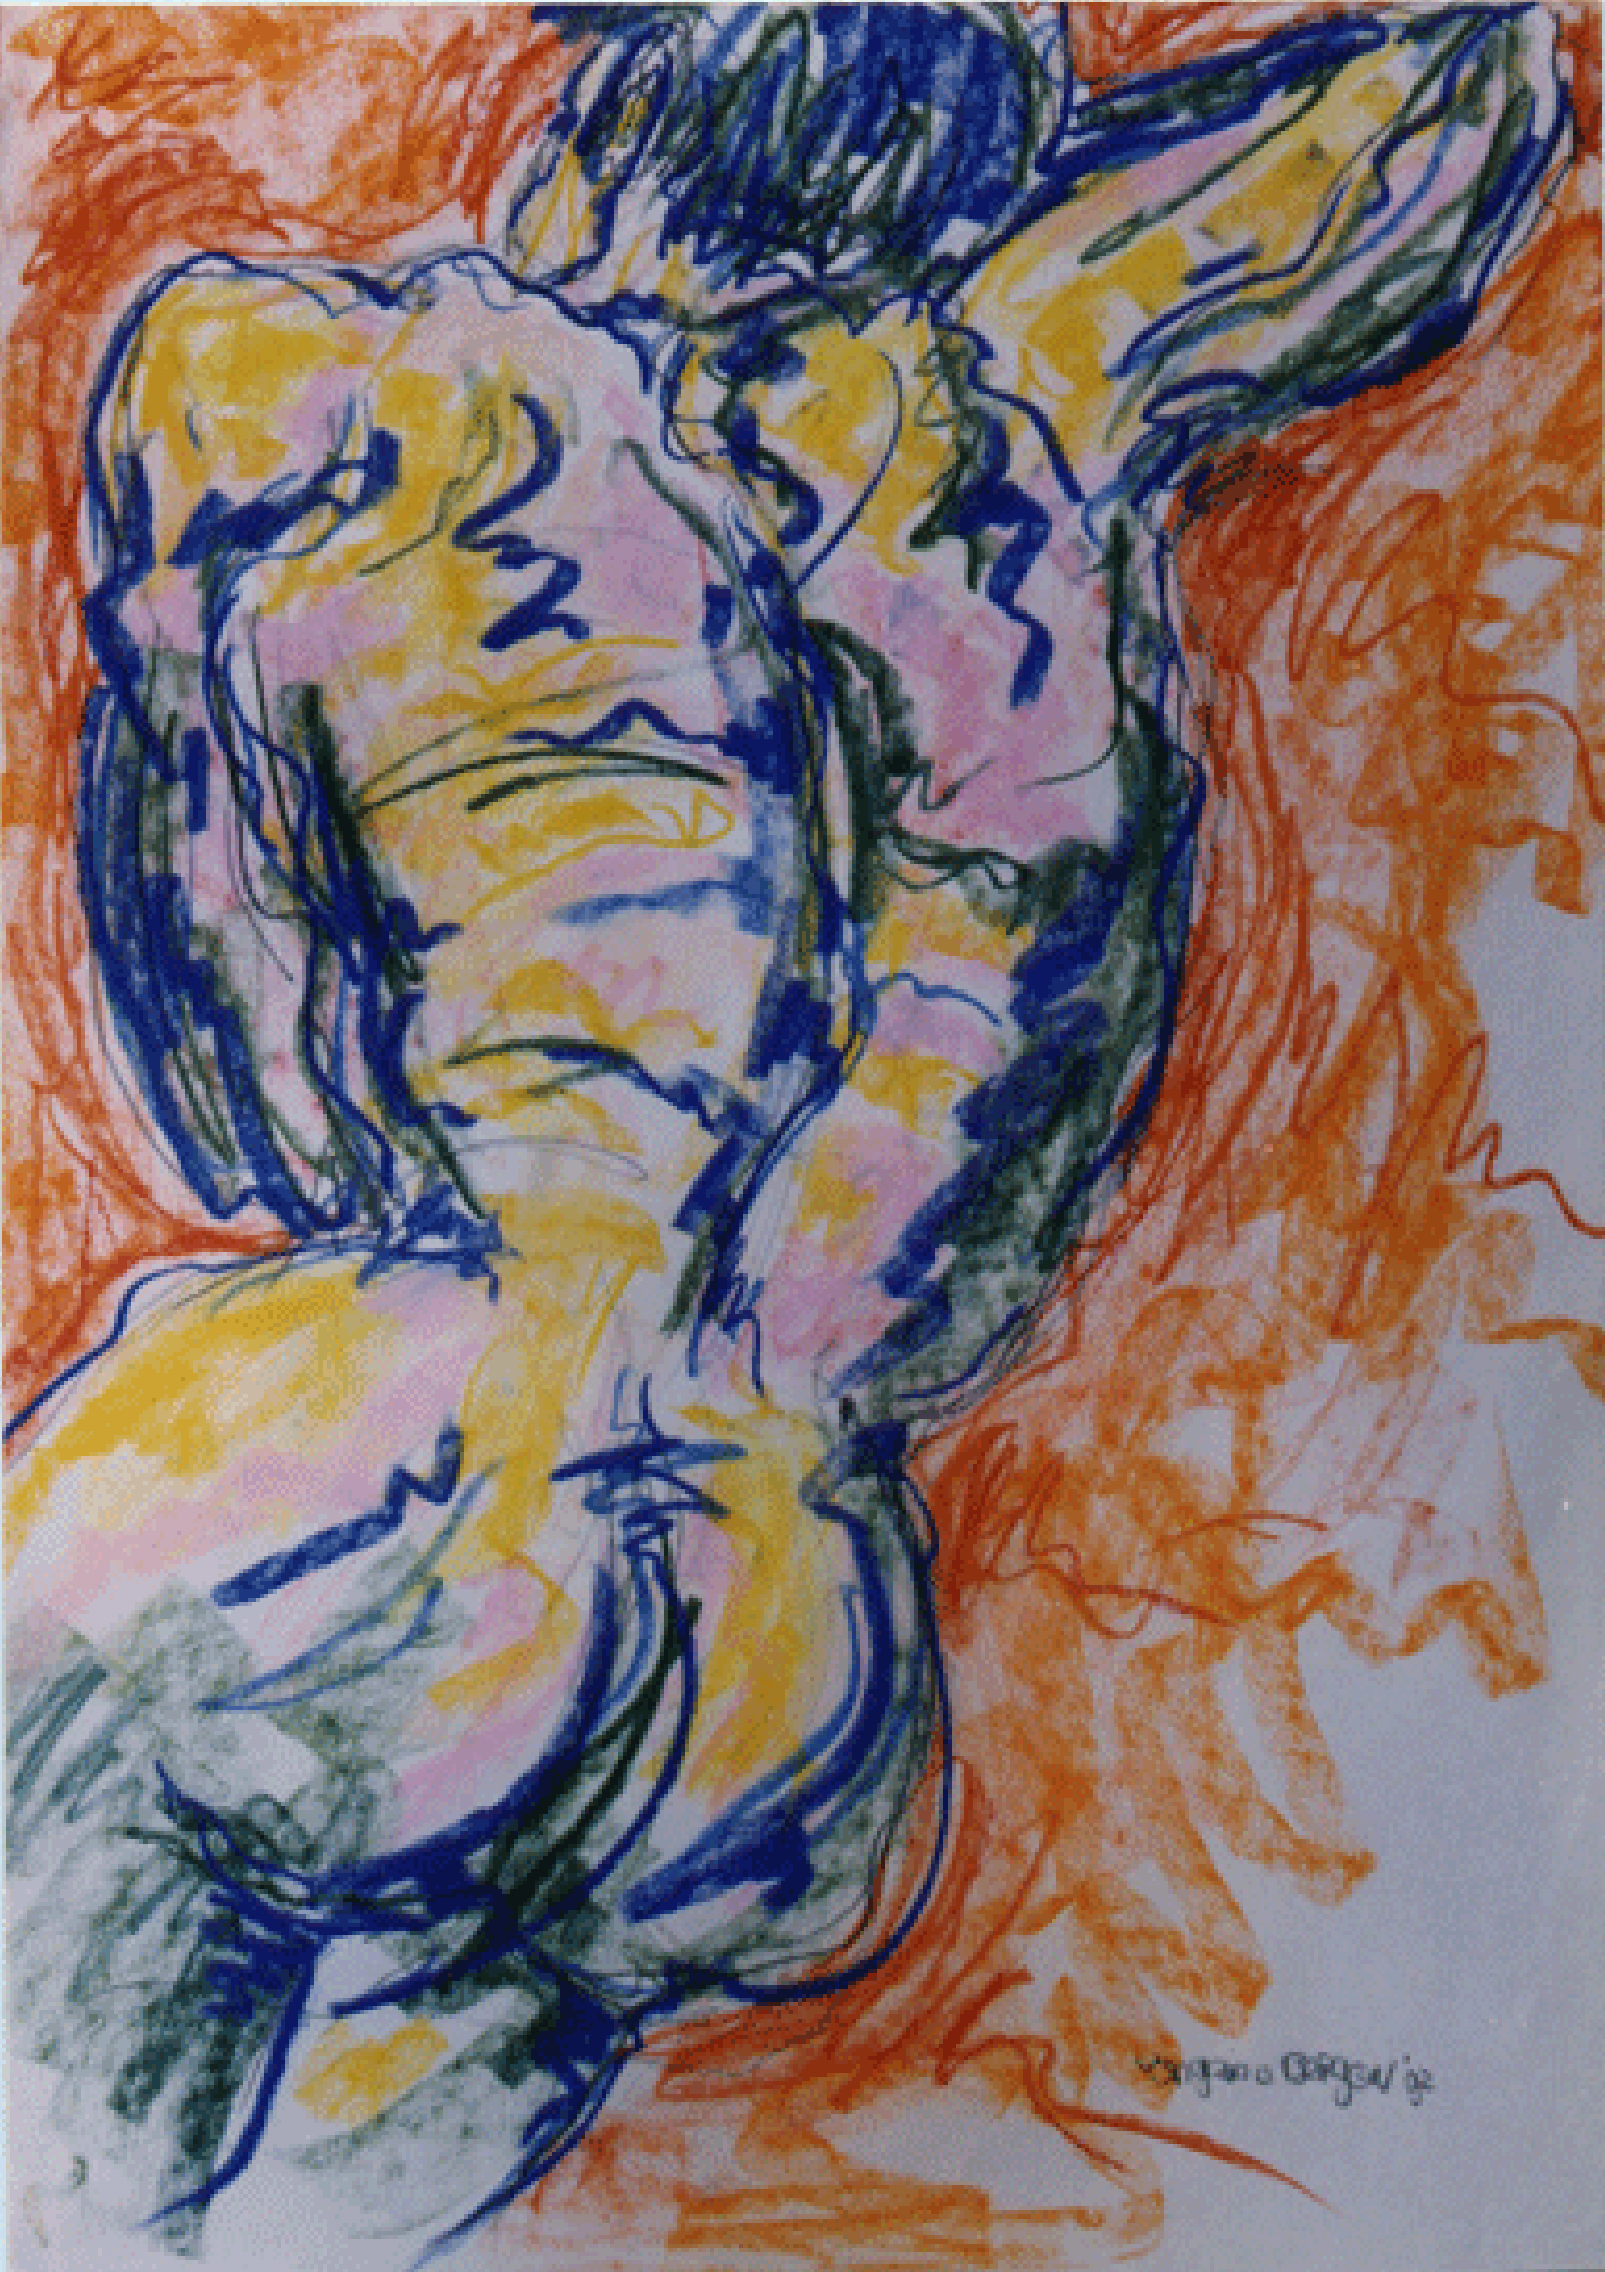 SCHLAFENDE MANN 1992

Pastell
75-110 cm.